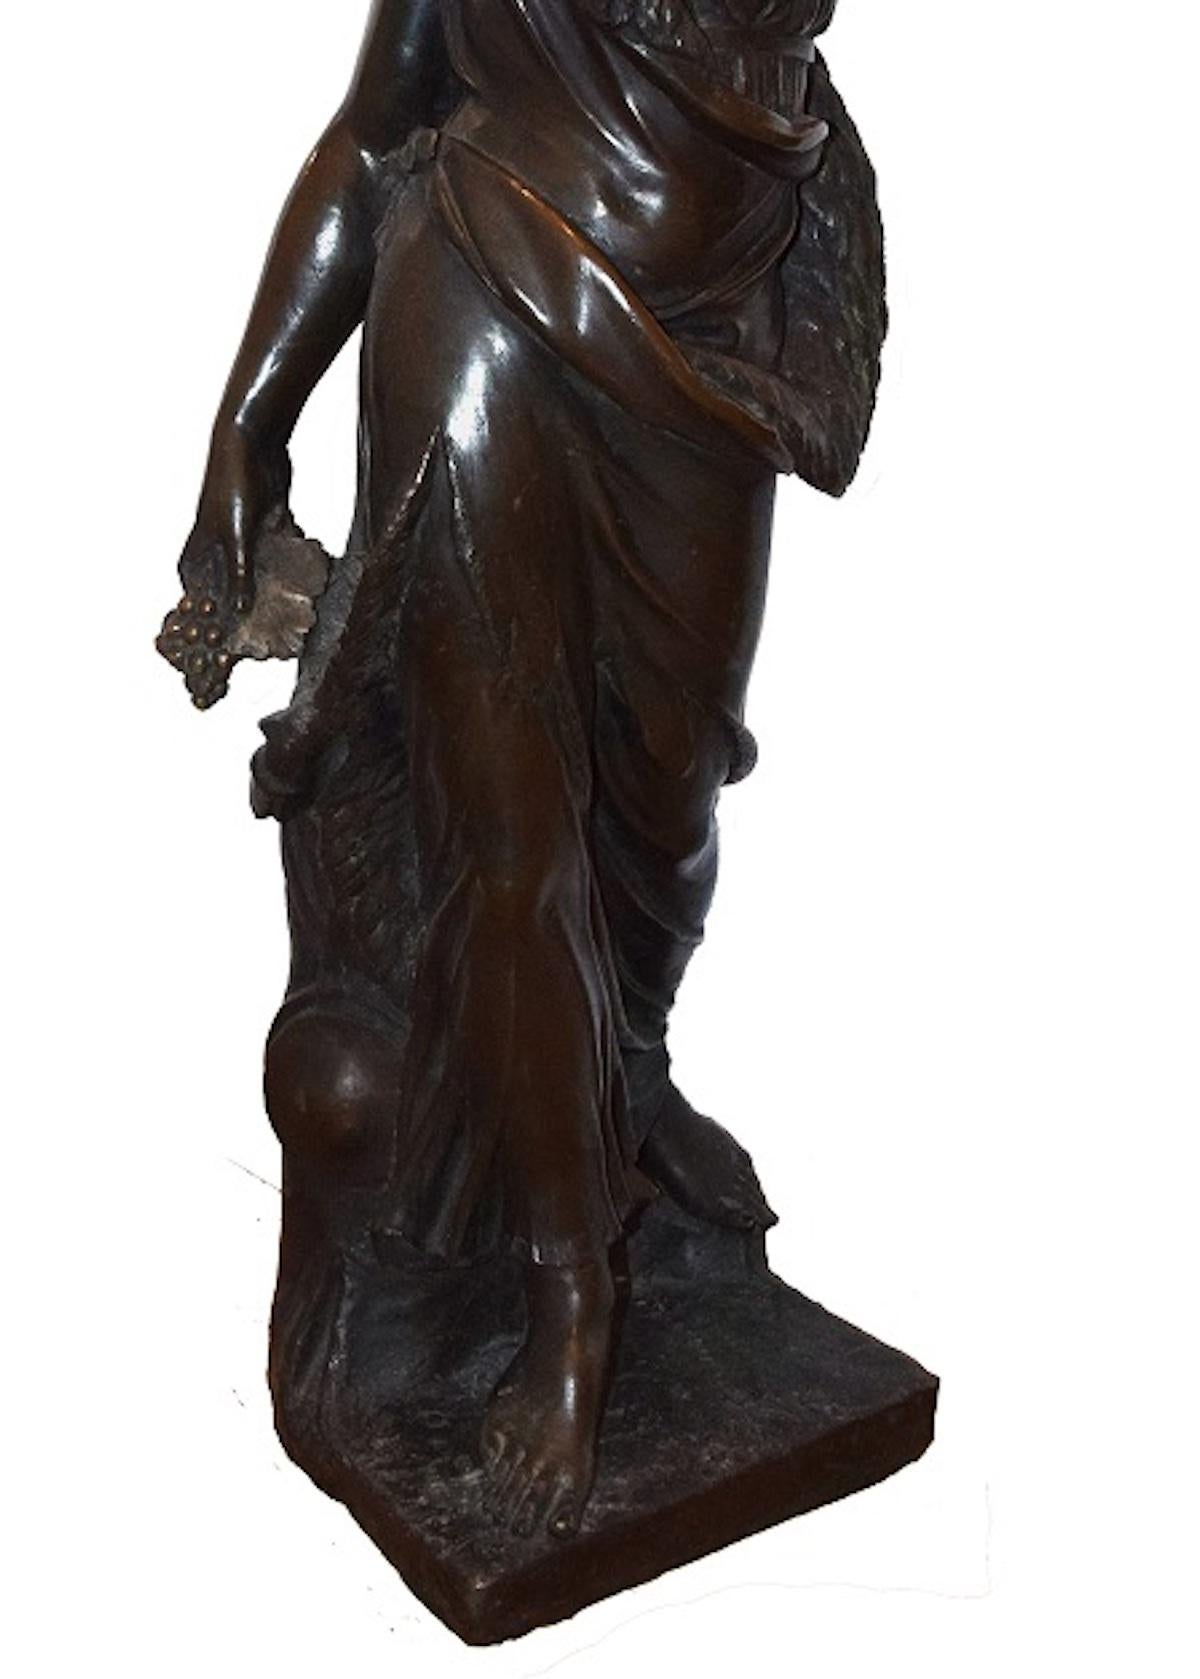 italian bronze sculpture artists